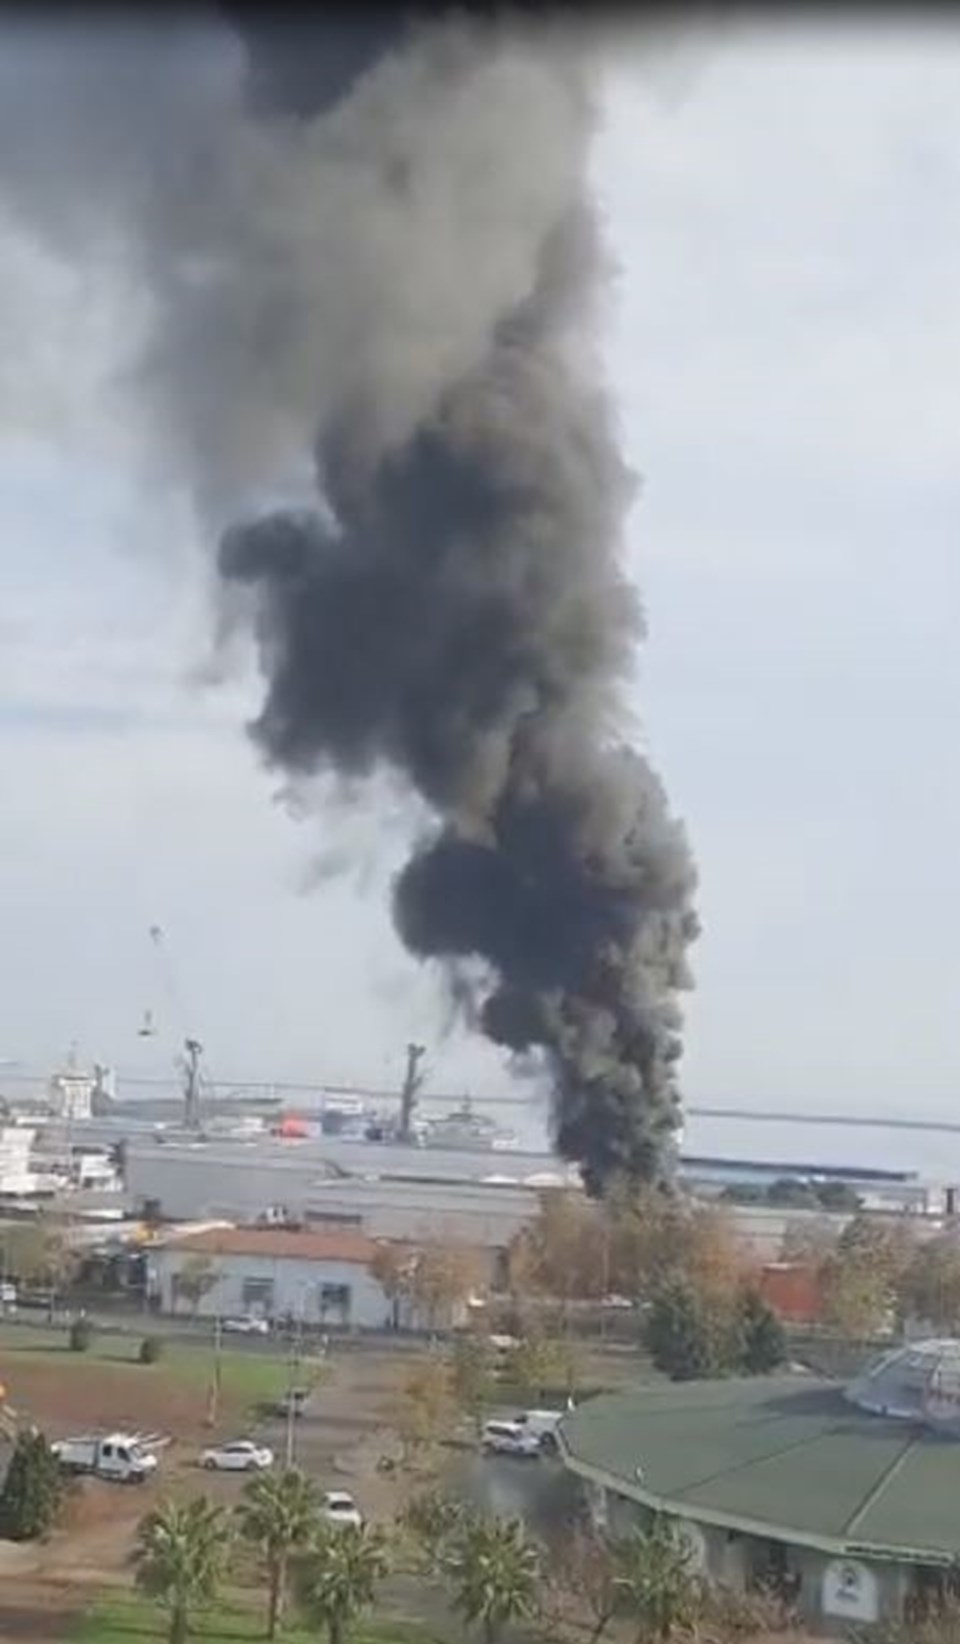 Samsun Limanı'nda yağ tankında patlama - 1